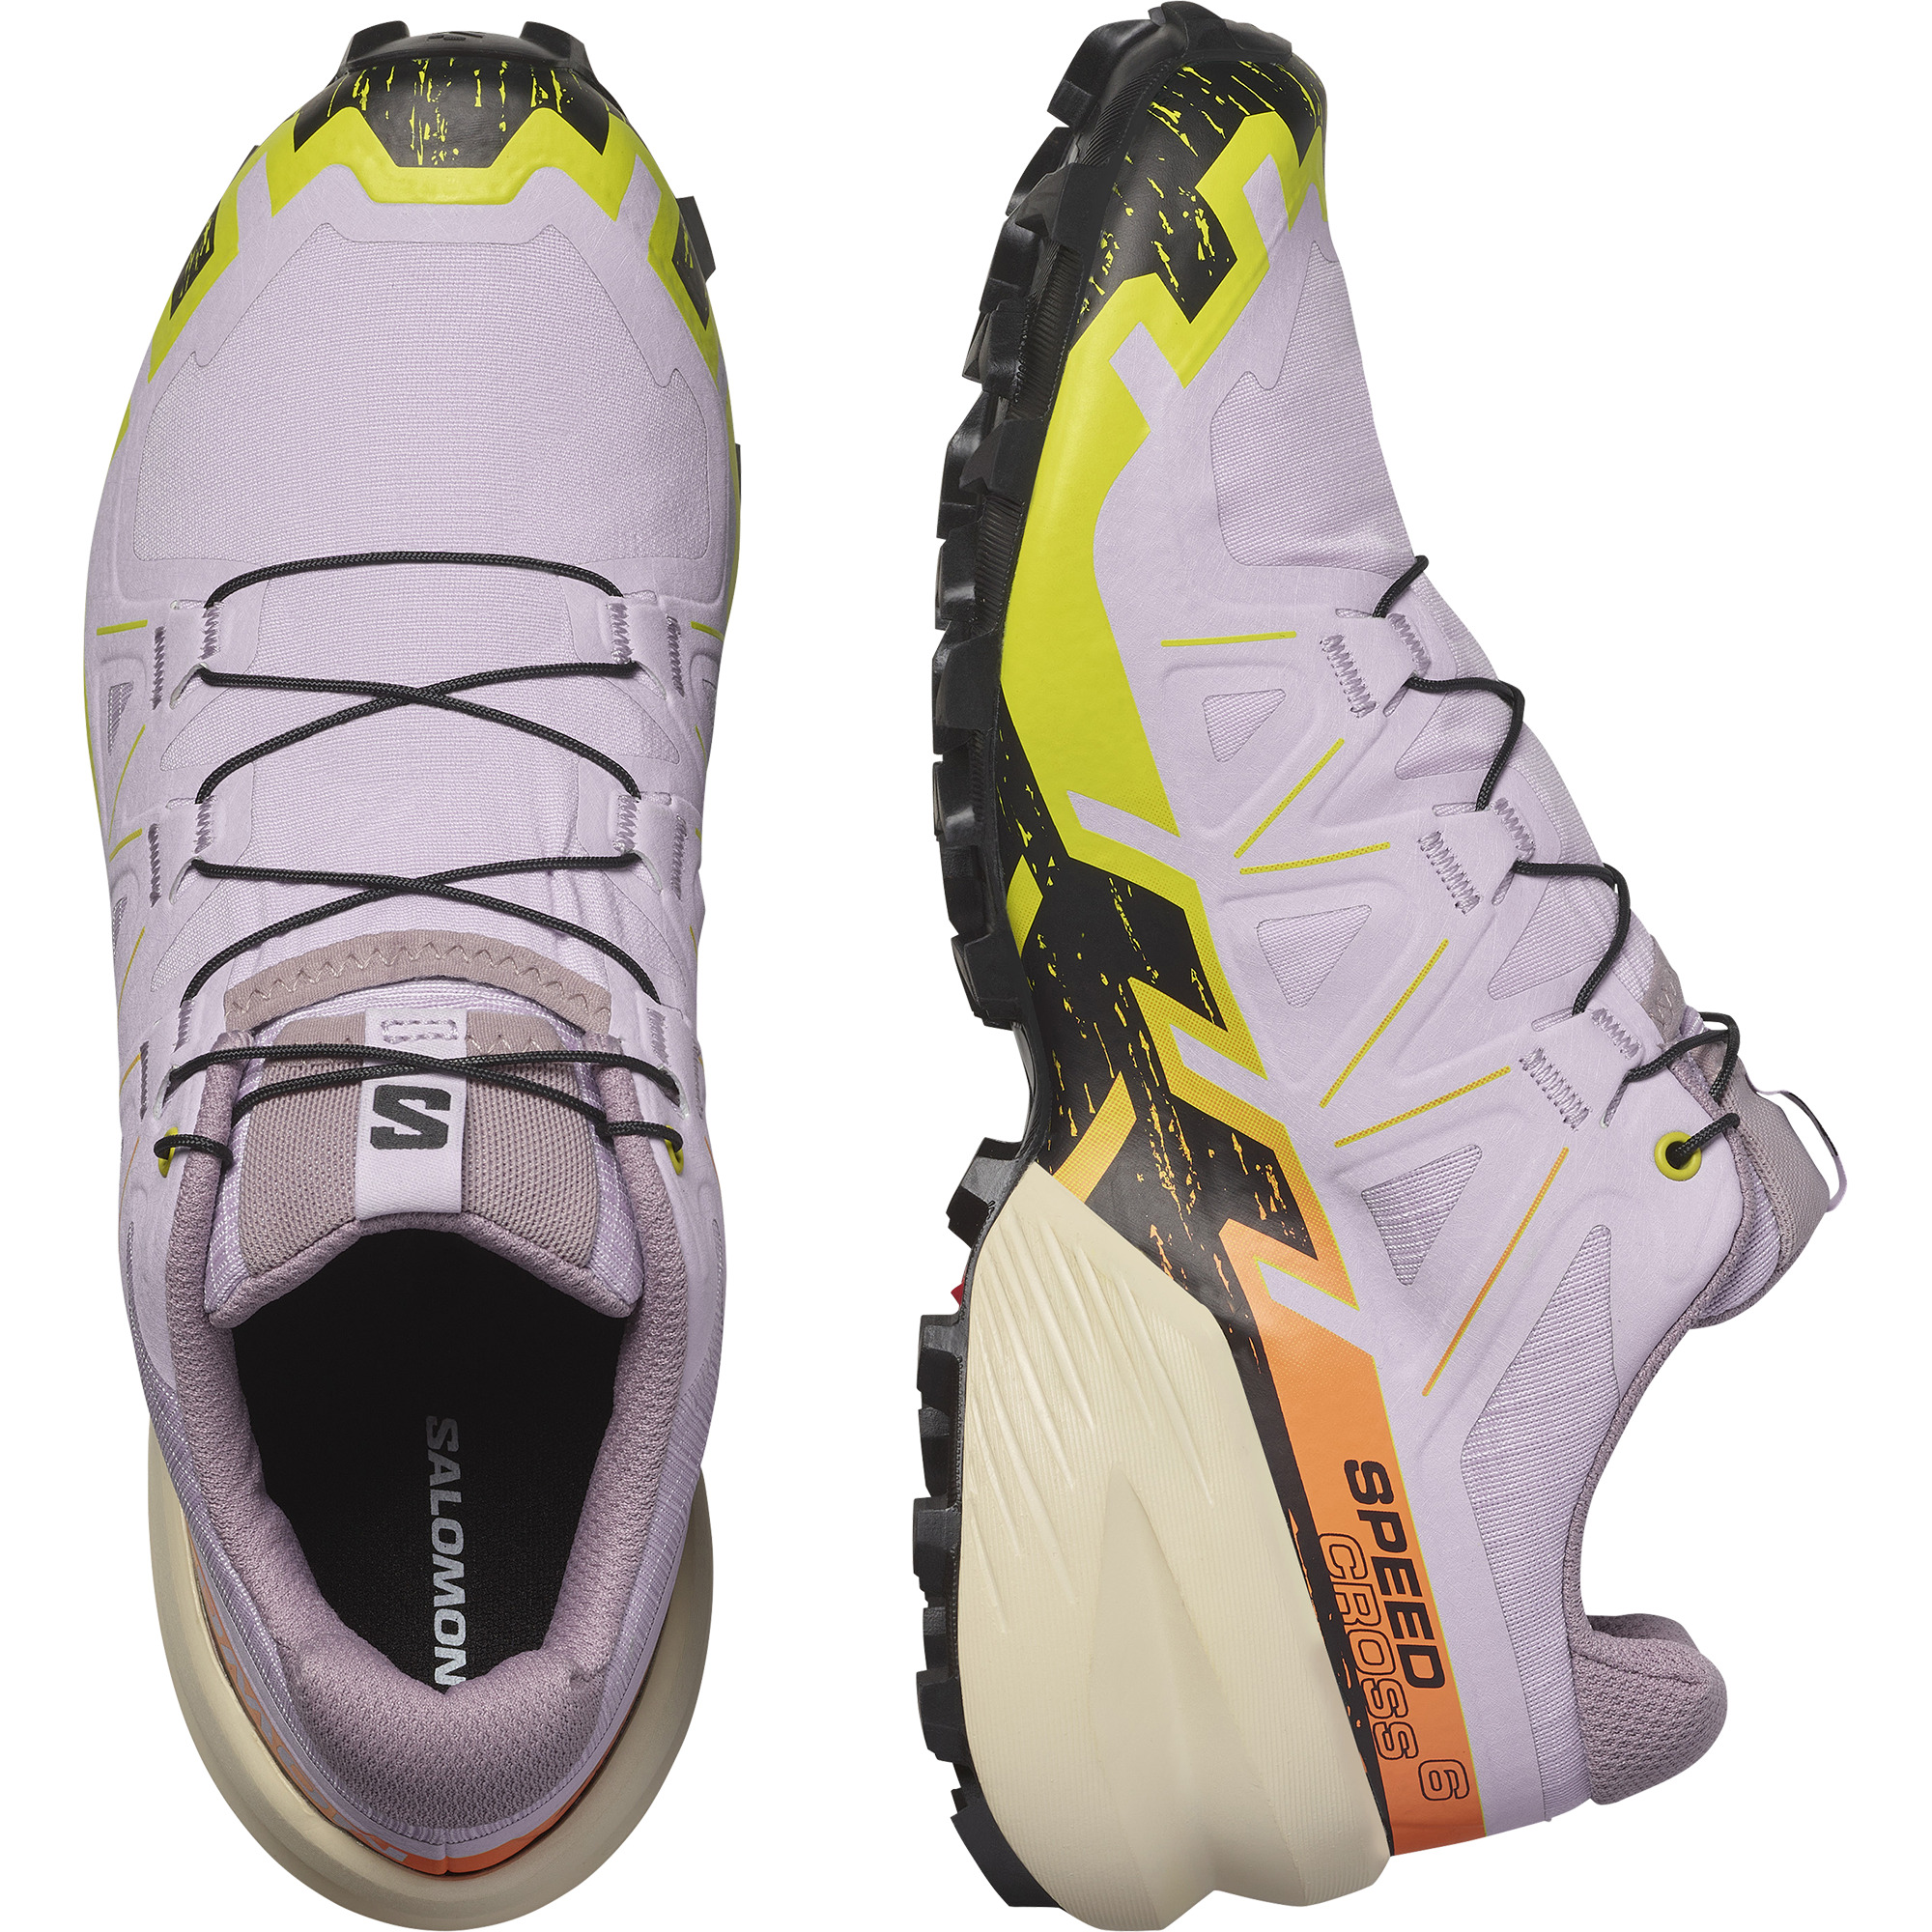  Salomon Women's SPEEDCROSS PEAK CLIMASALOMON WATERPROOF Trail  Running Shoes for Women, Black / Nightshade / Orchid Petal, 7